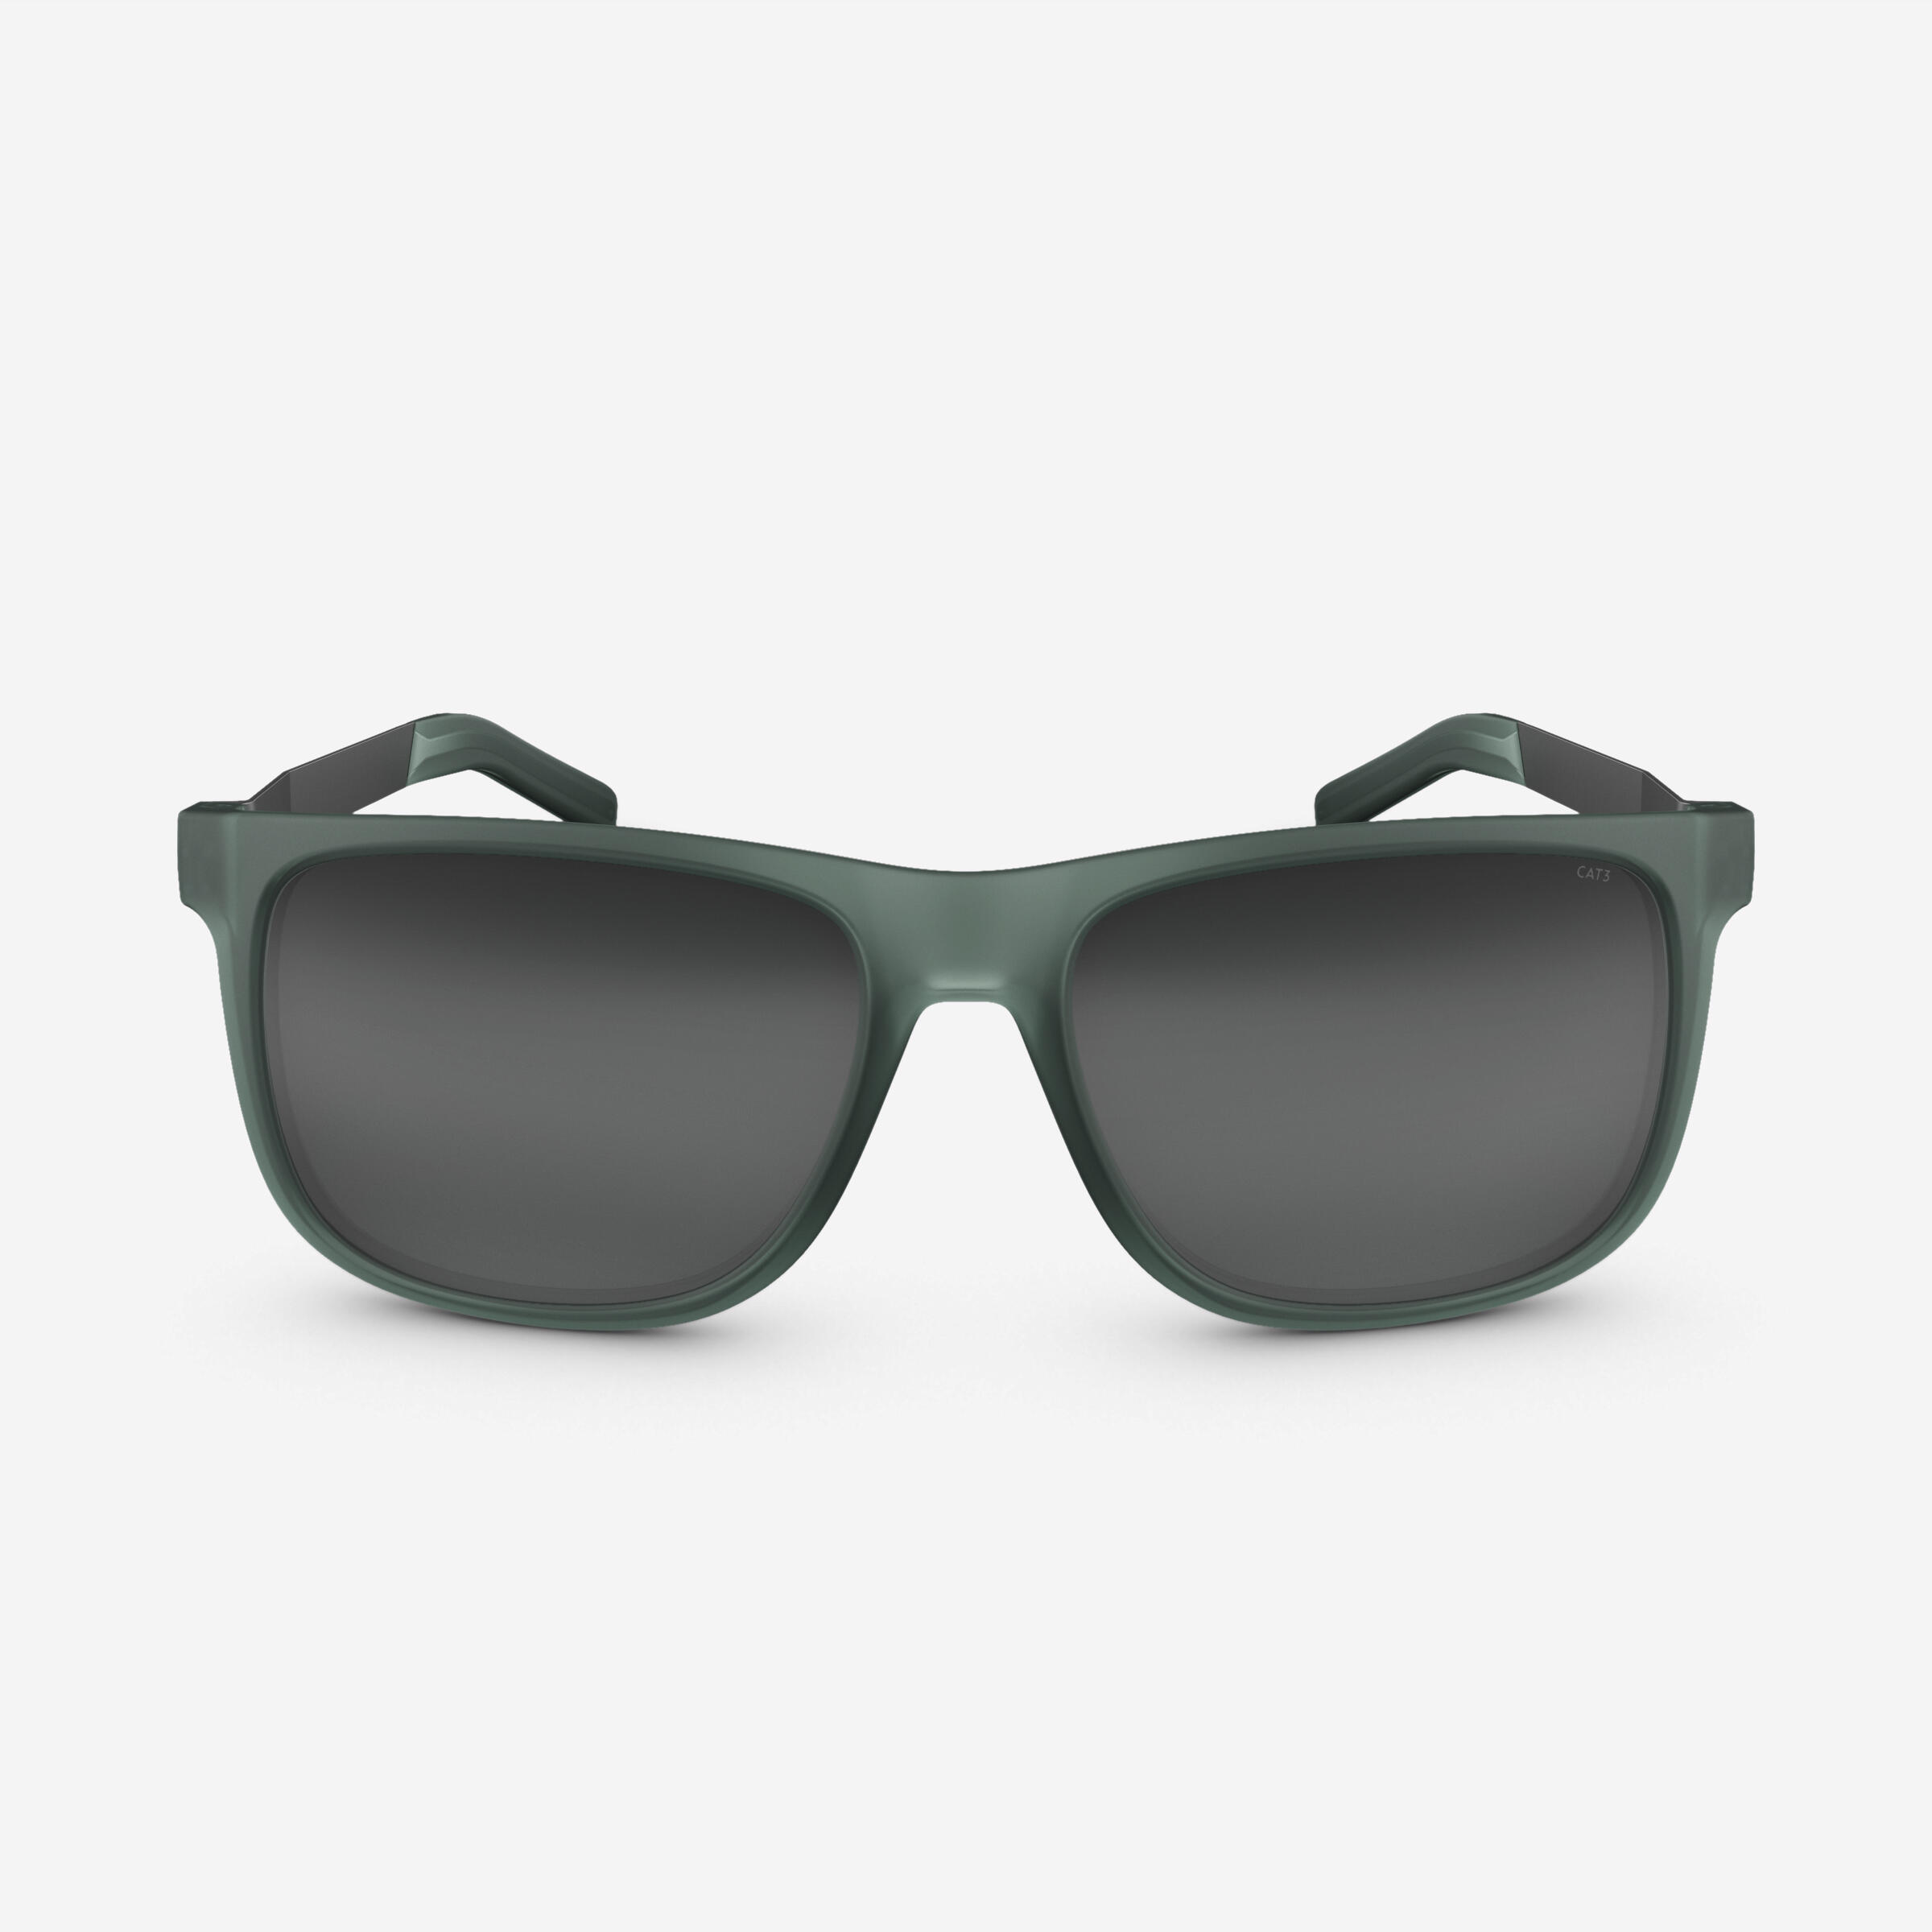 Sunglasses MH 140 Premium Cat 3 - Green 4/9